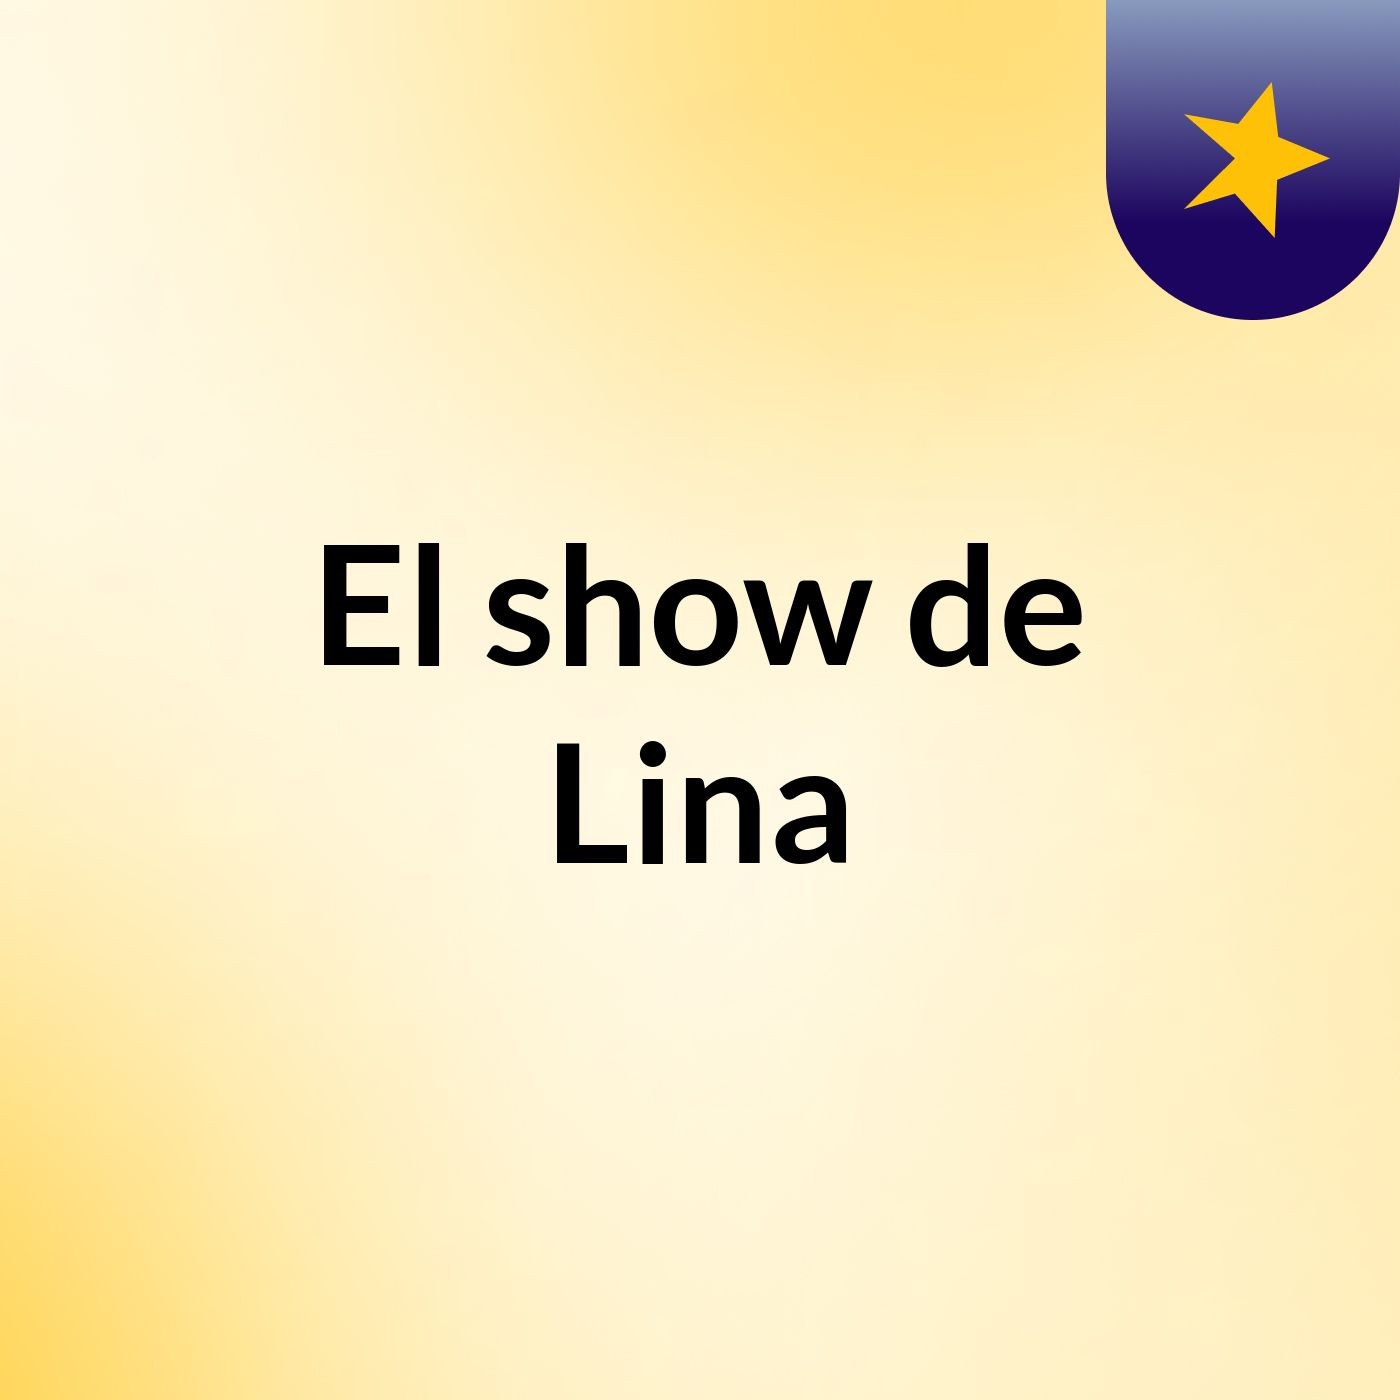 El show de Lina